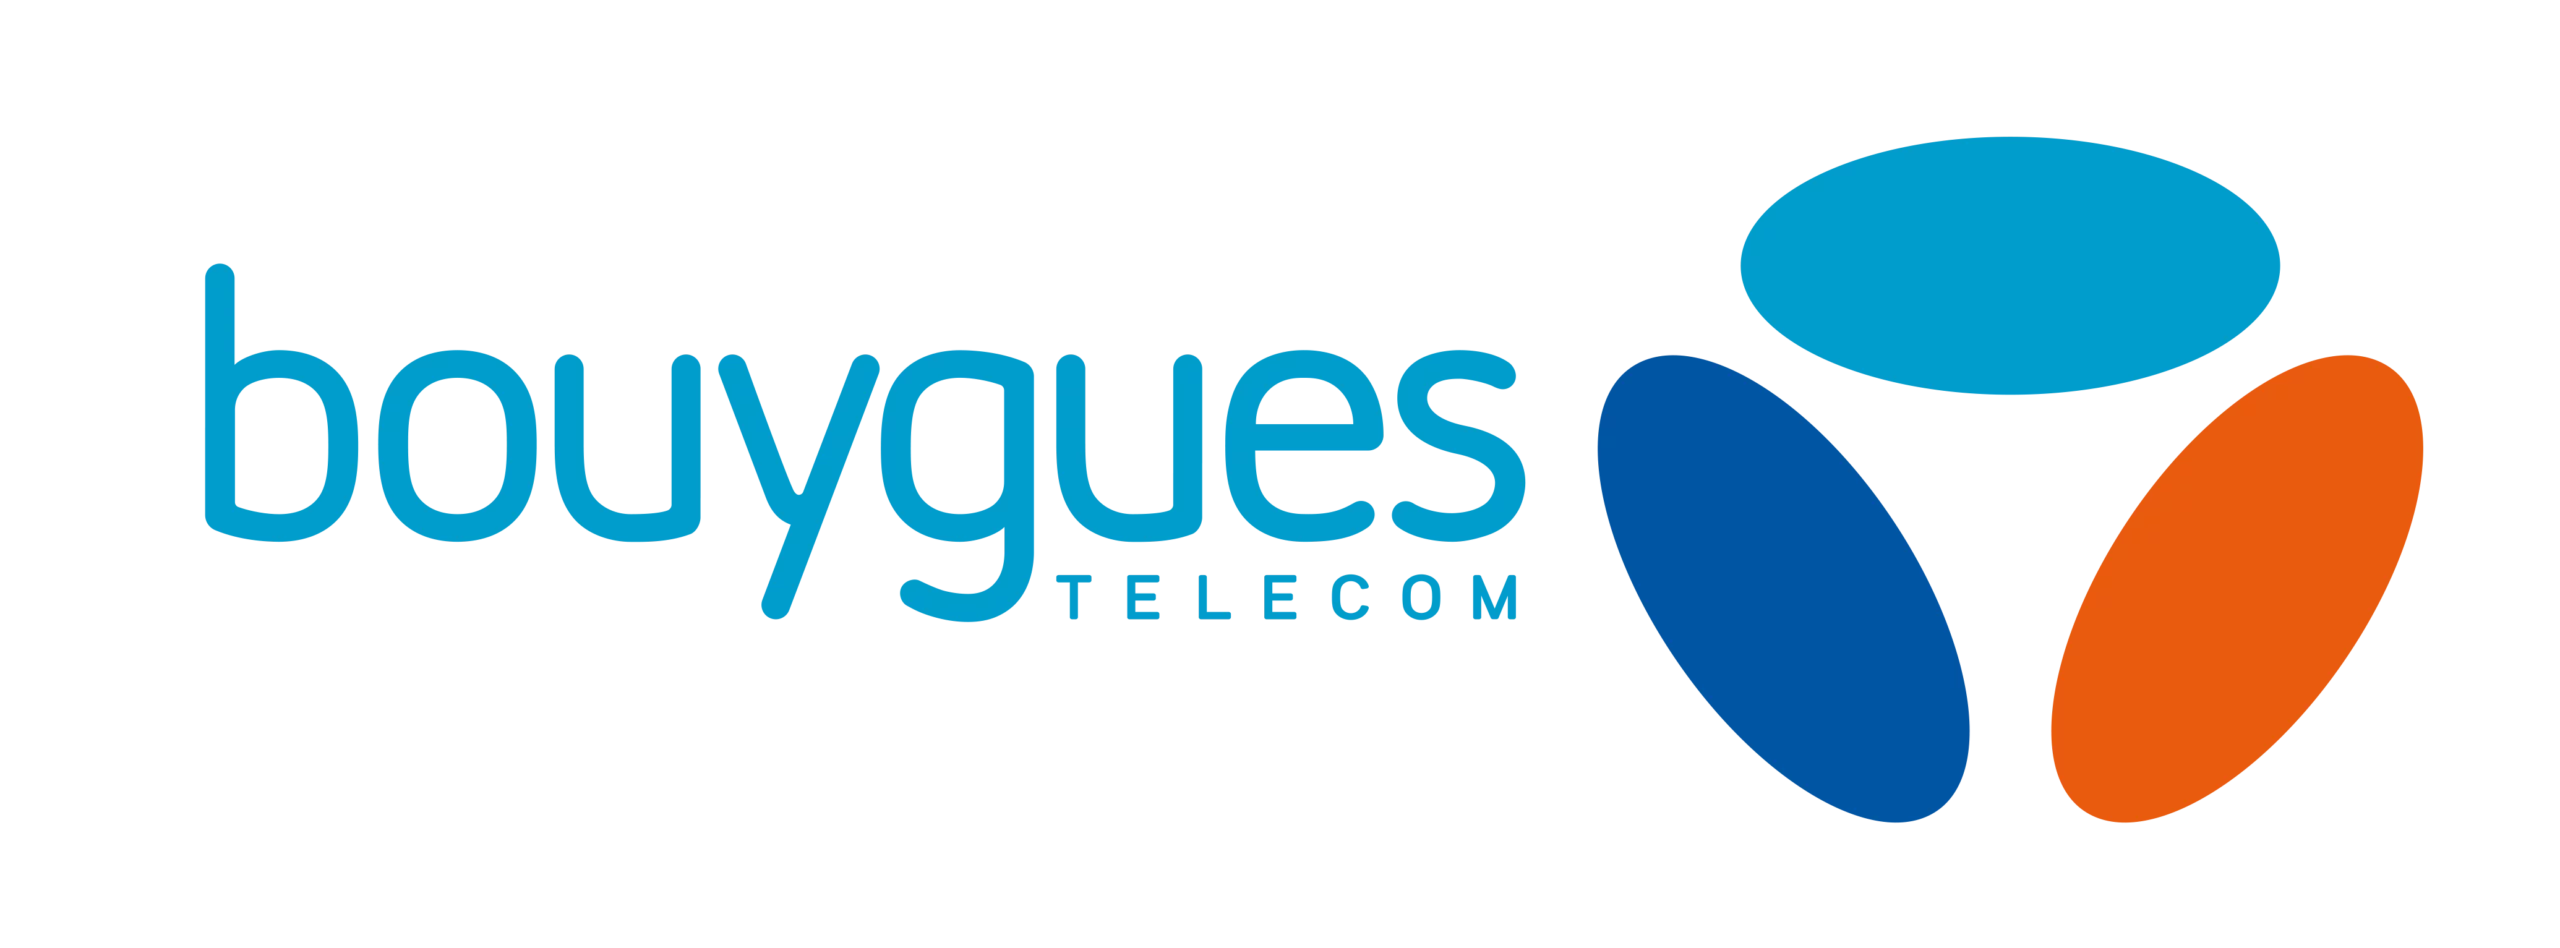 Bouygues-Telecom-logo